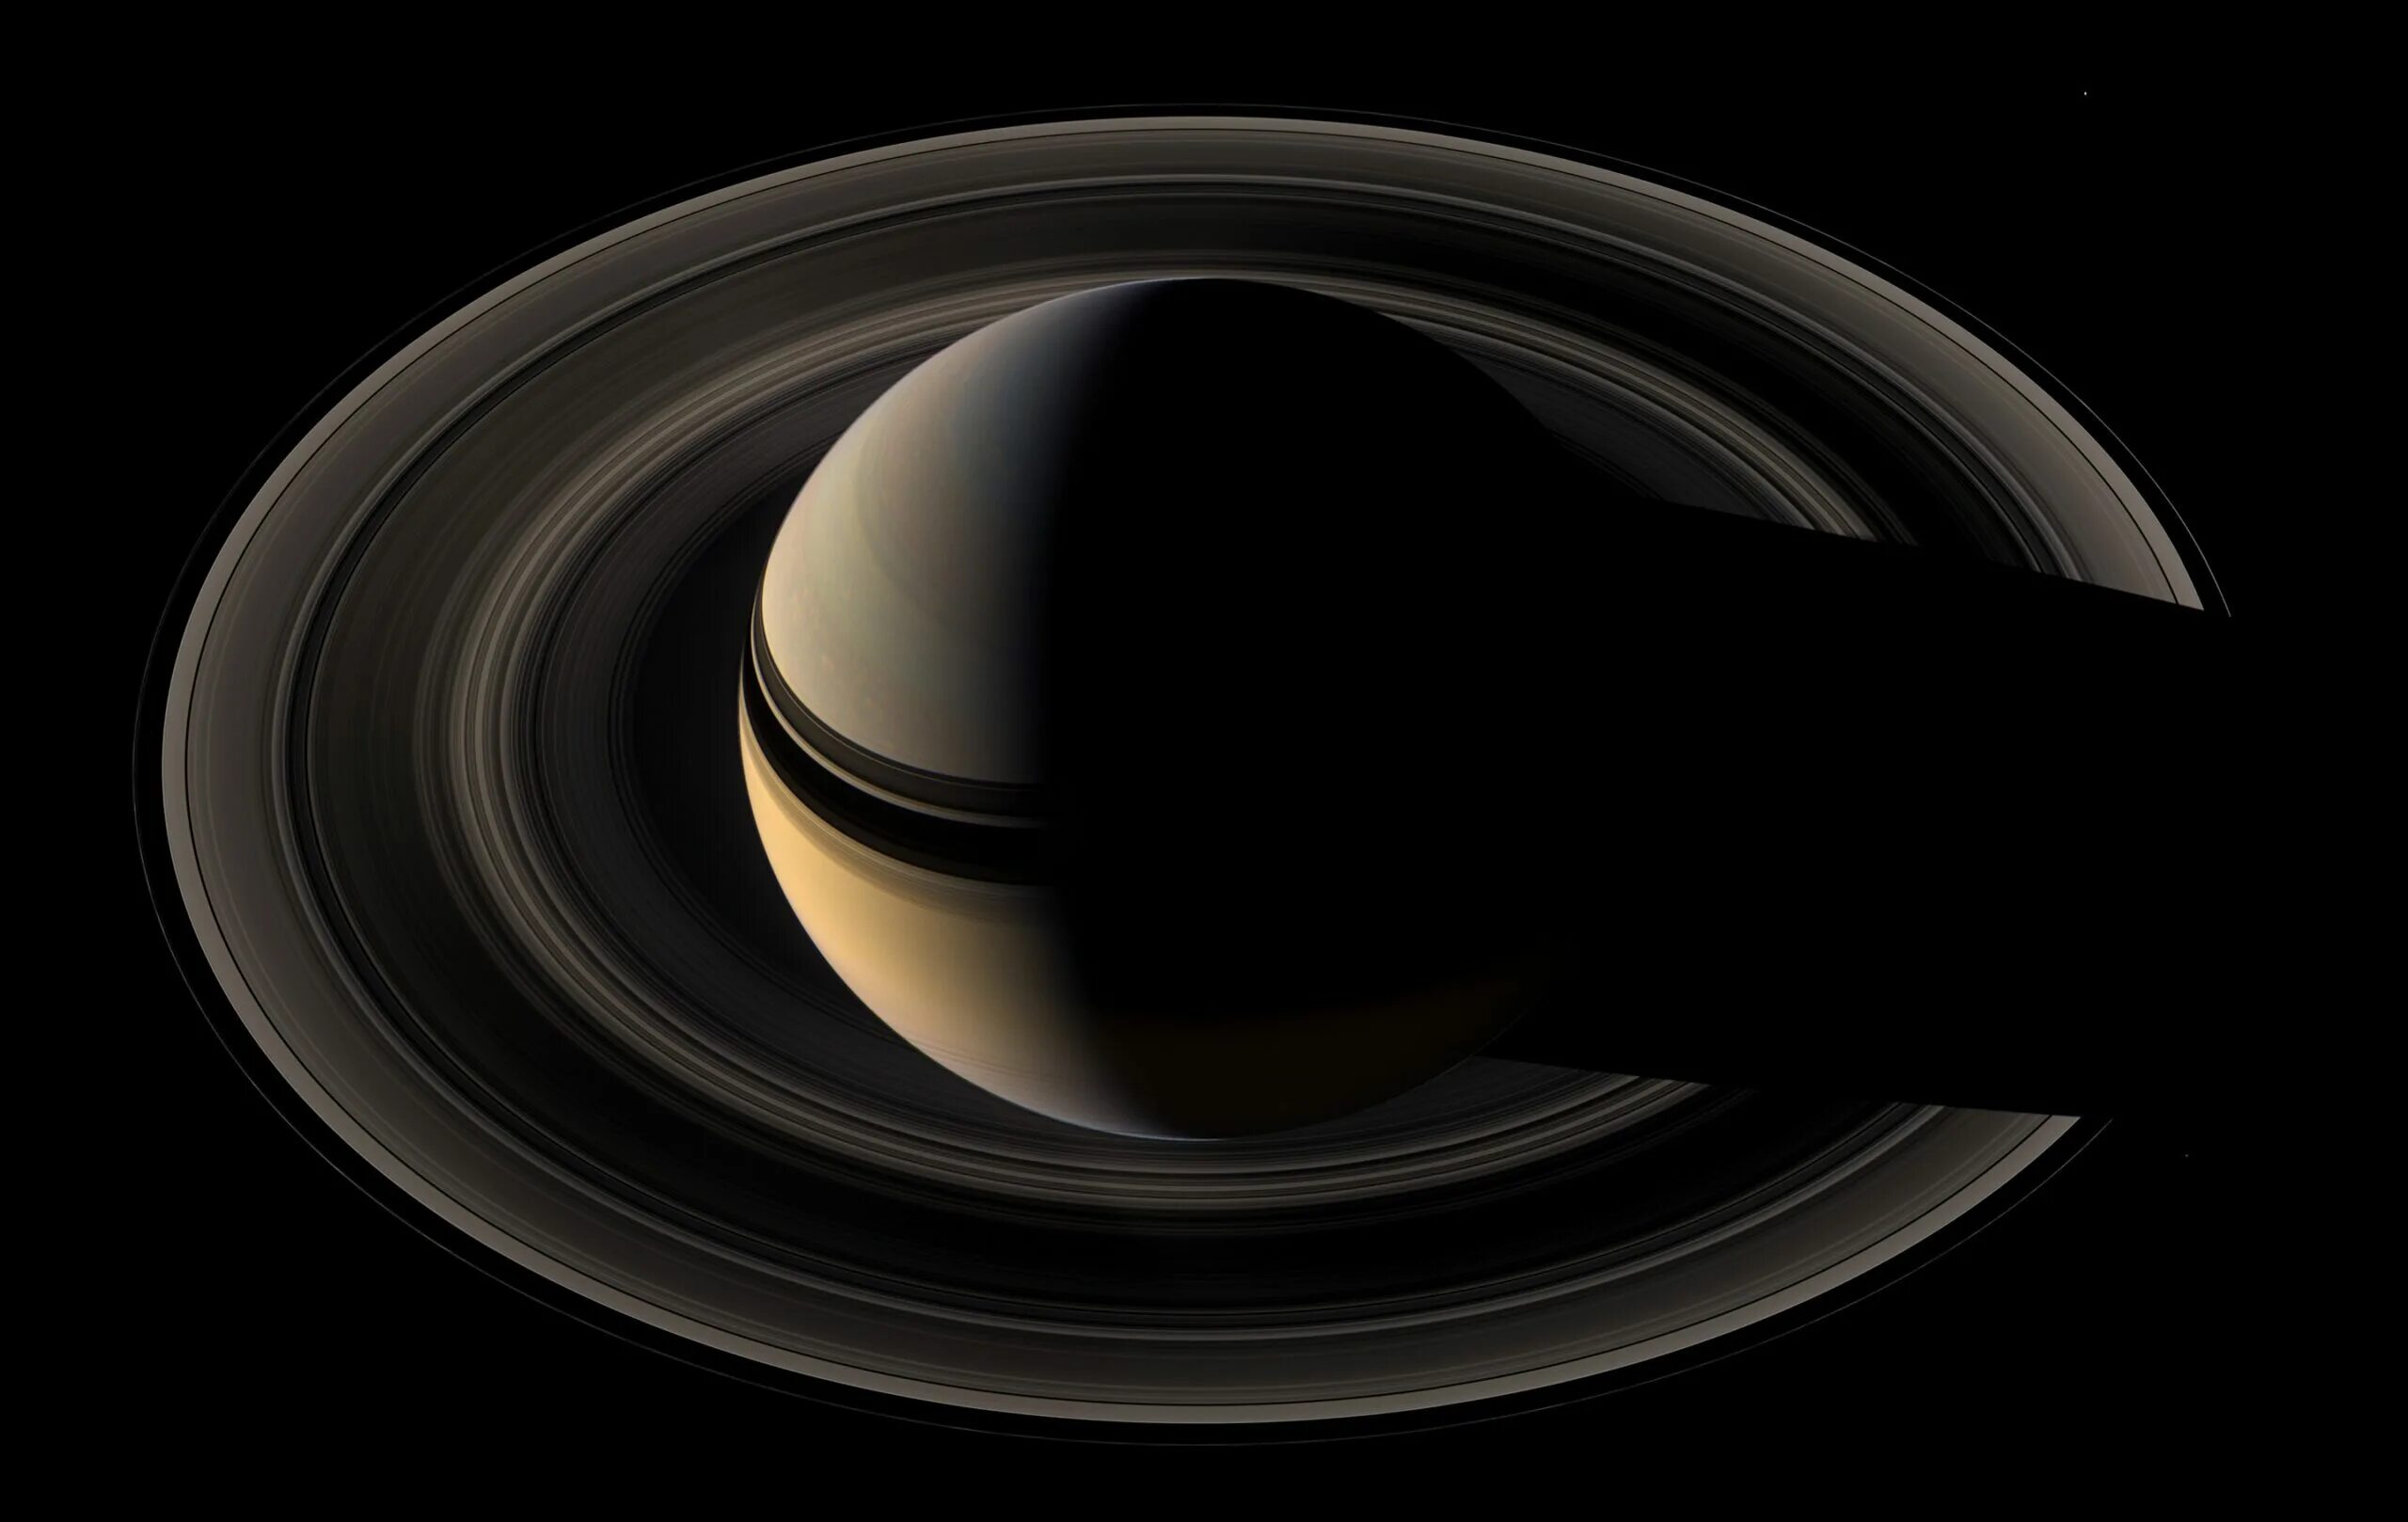 Планета Сатурн Кассини. Планета Сатурн Кассини кольца. Сатурна НАСА "Кассини". Сатурн Планета фото Кассини. Сатурн земная группа